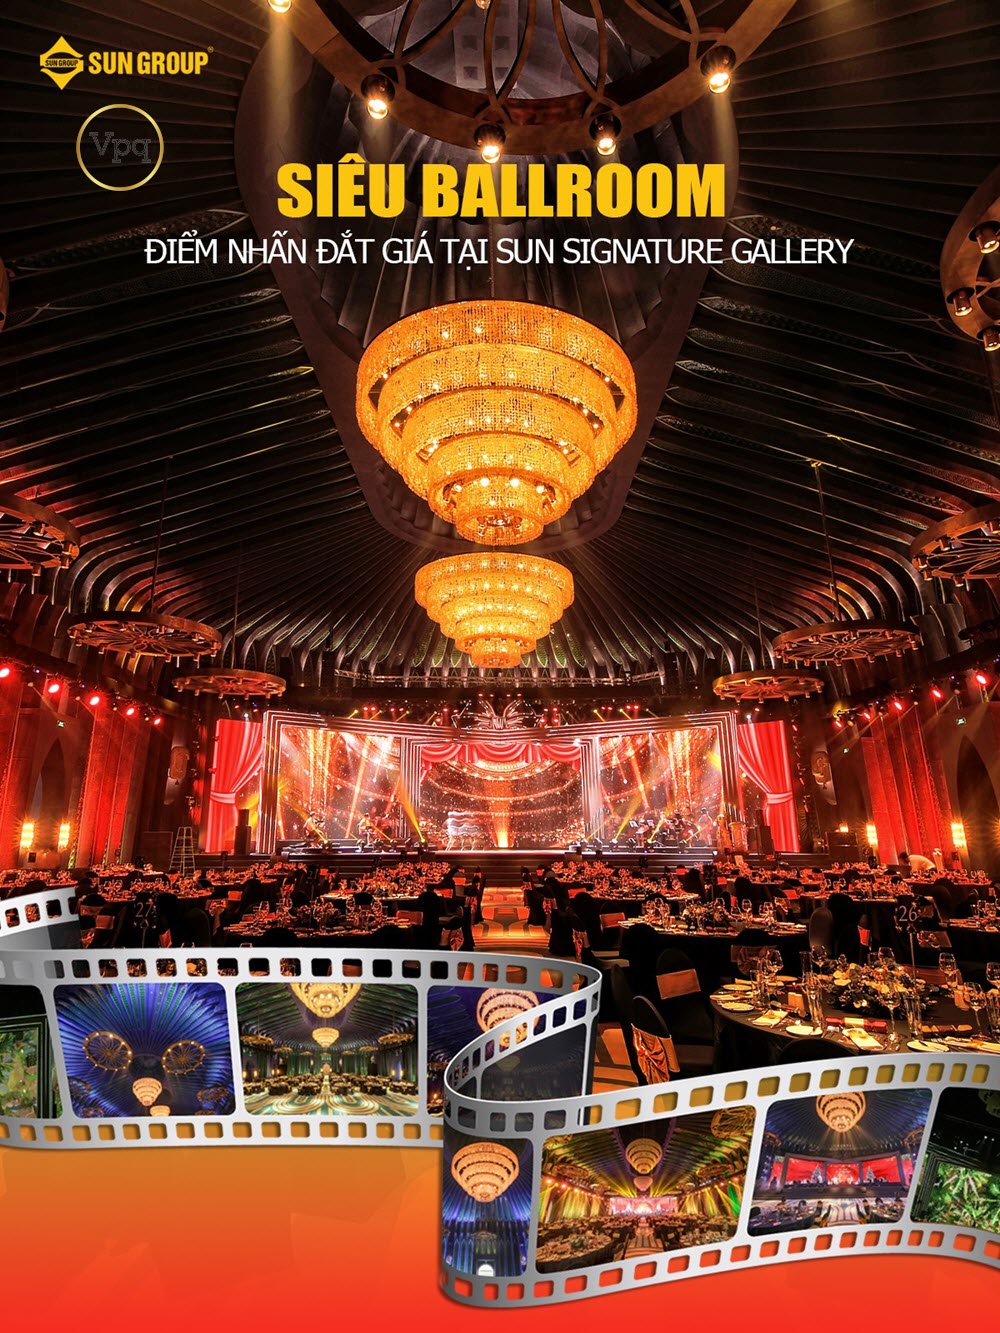 Siêu "Ballroom" điểm nhấn đắt giá tại Sun Signature Gallery